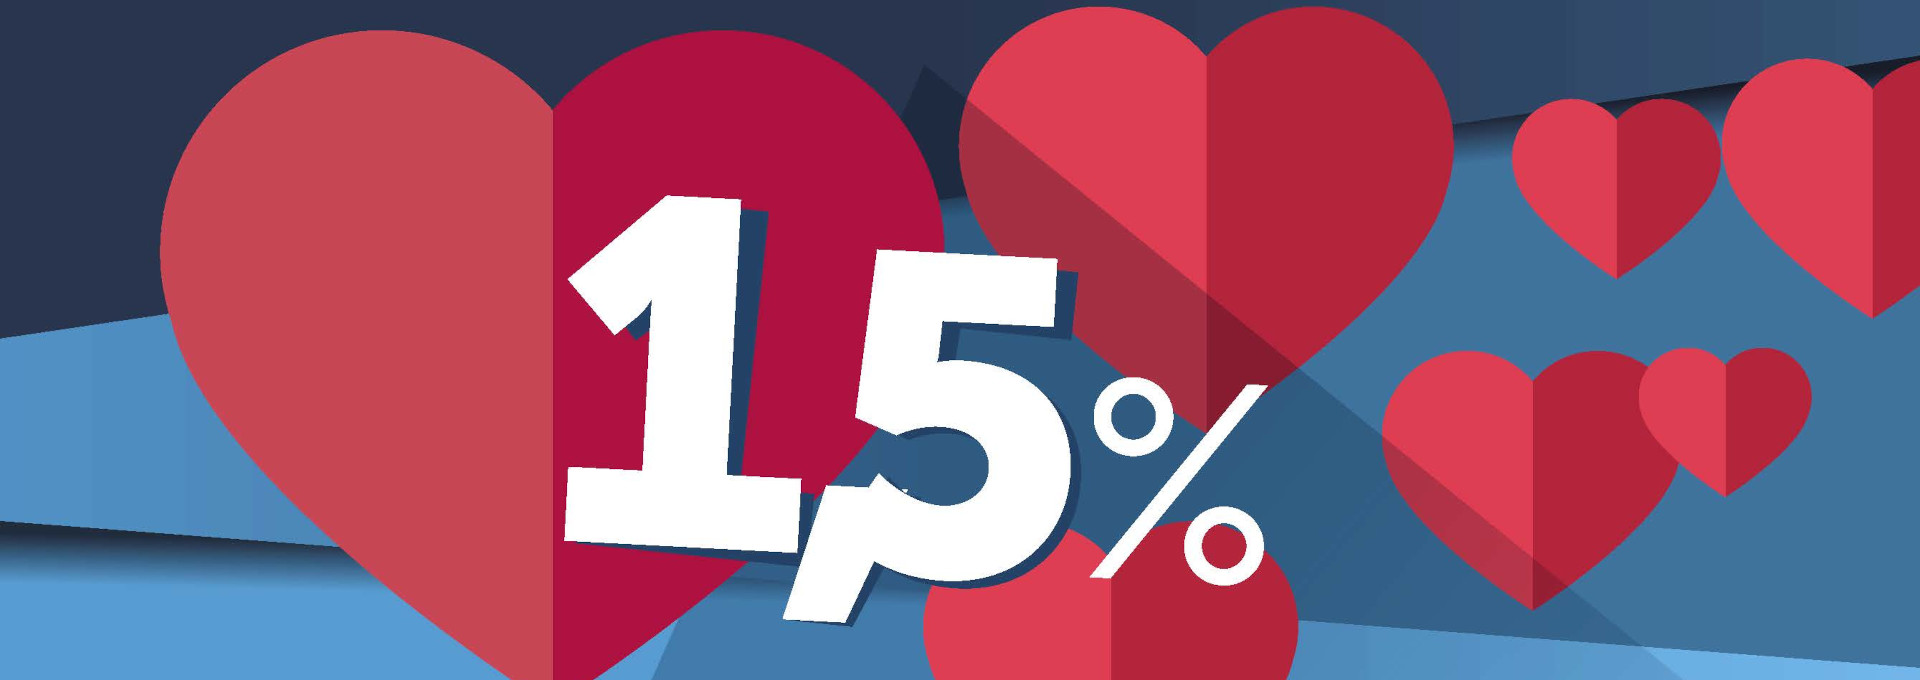 Czerwone serca na niebieskim tle oraz napis: 1,5%